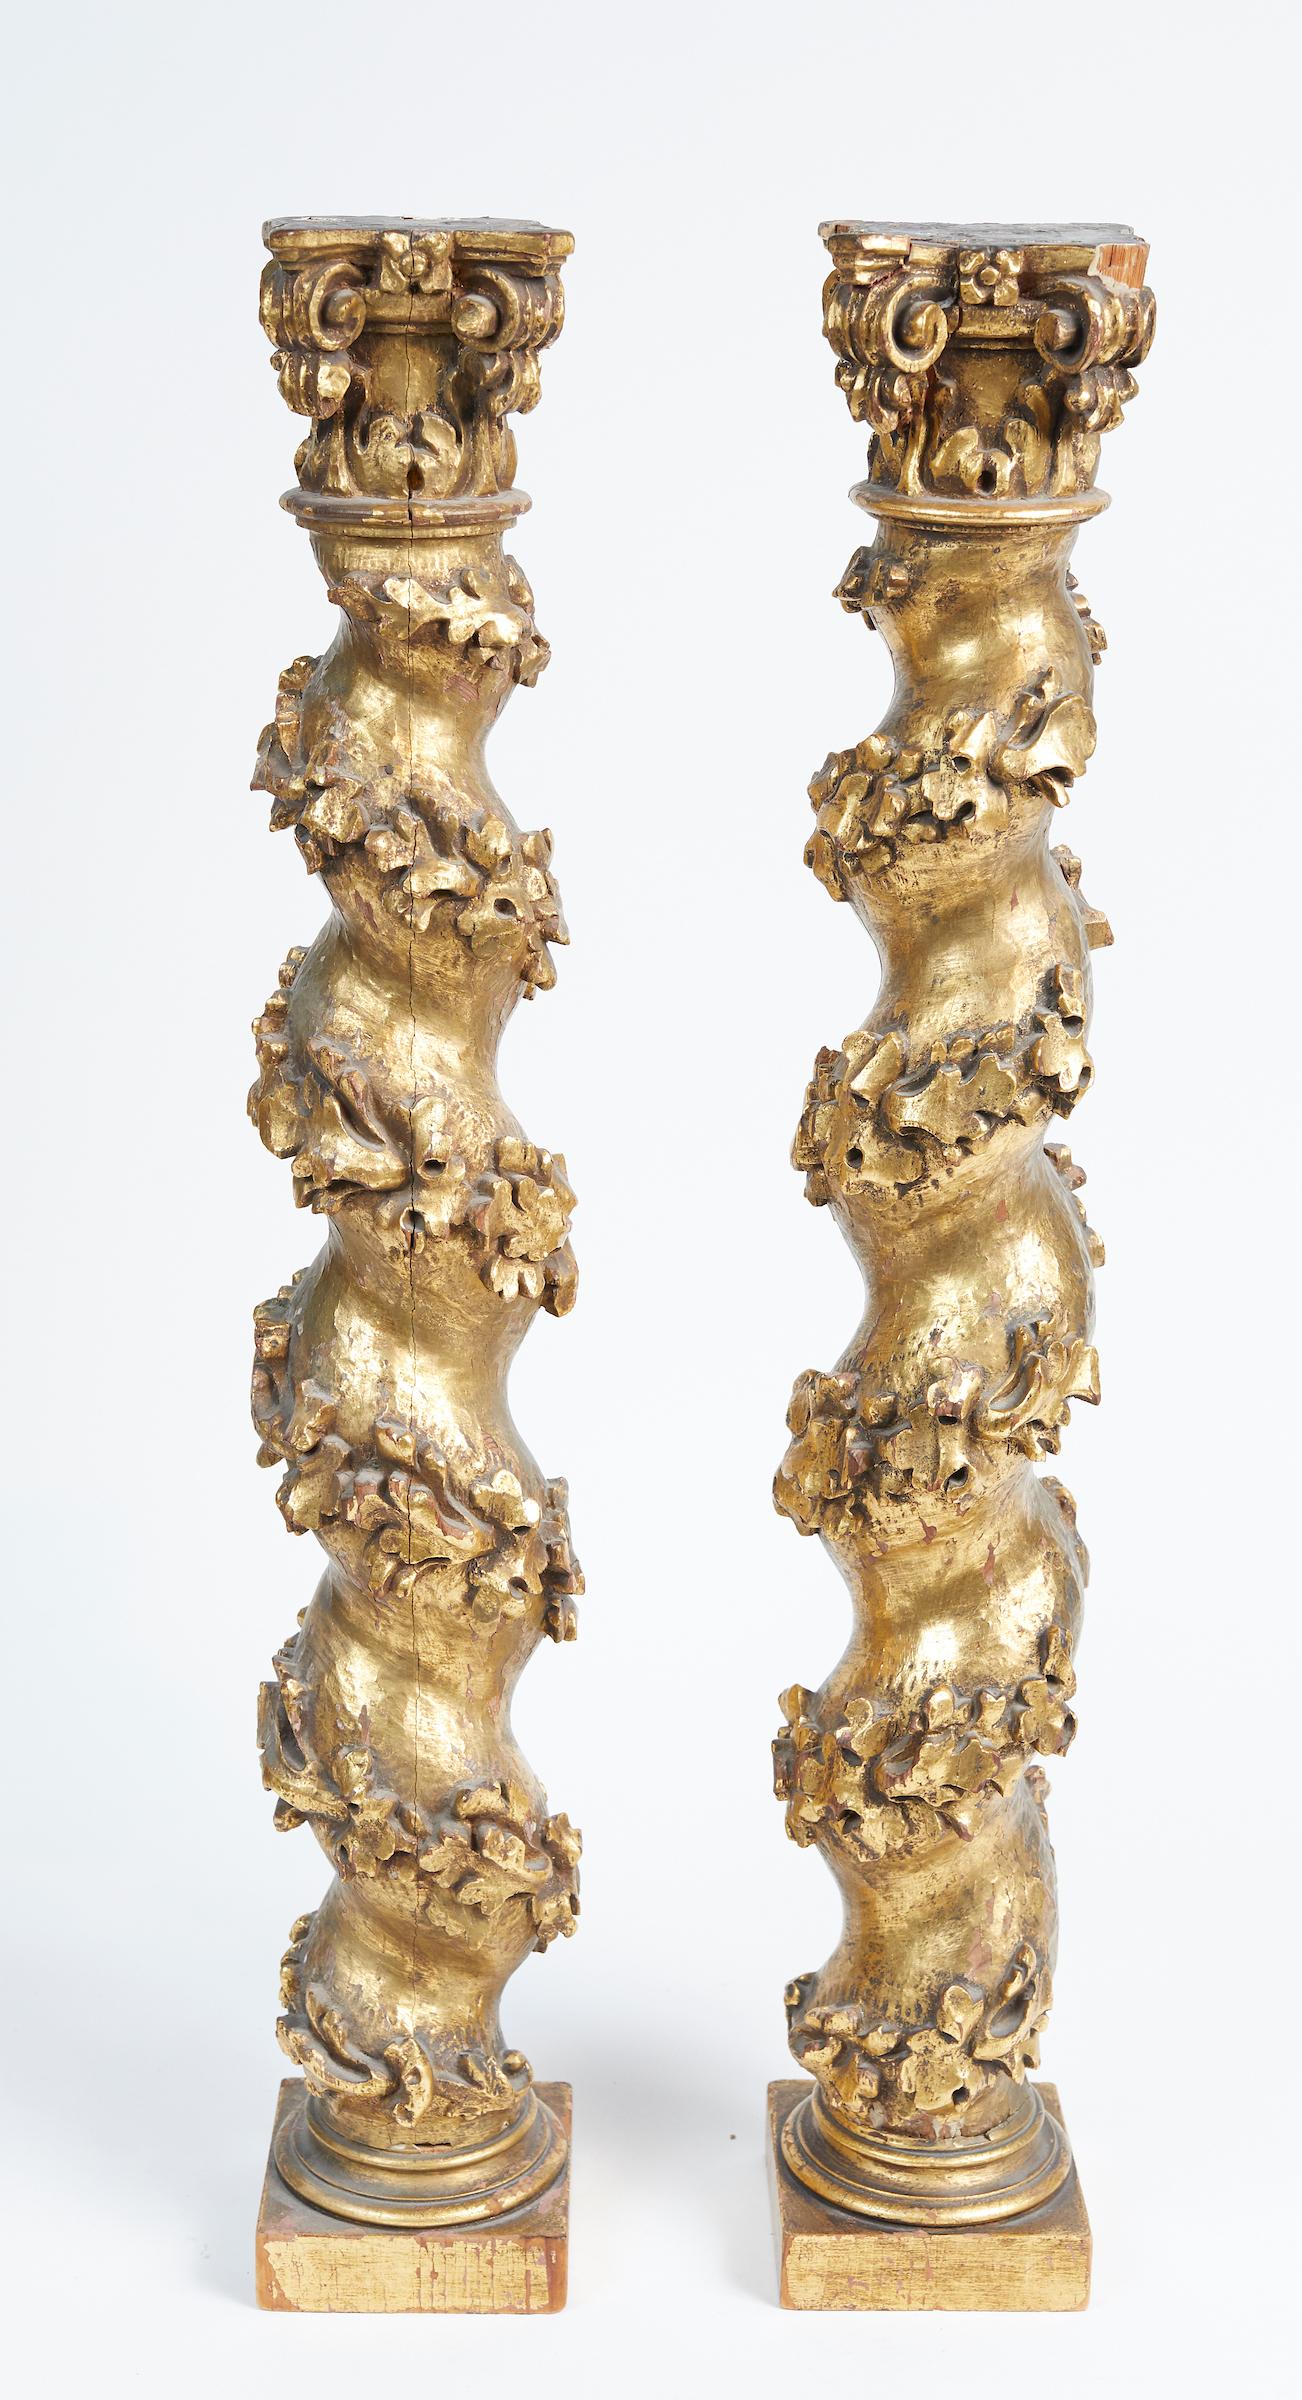 Paire de colonnes baroques italiennes en bois doré sculpté.